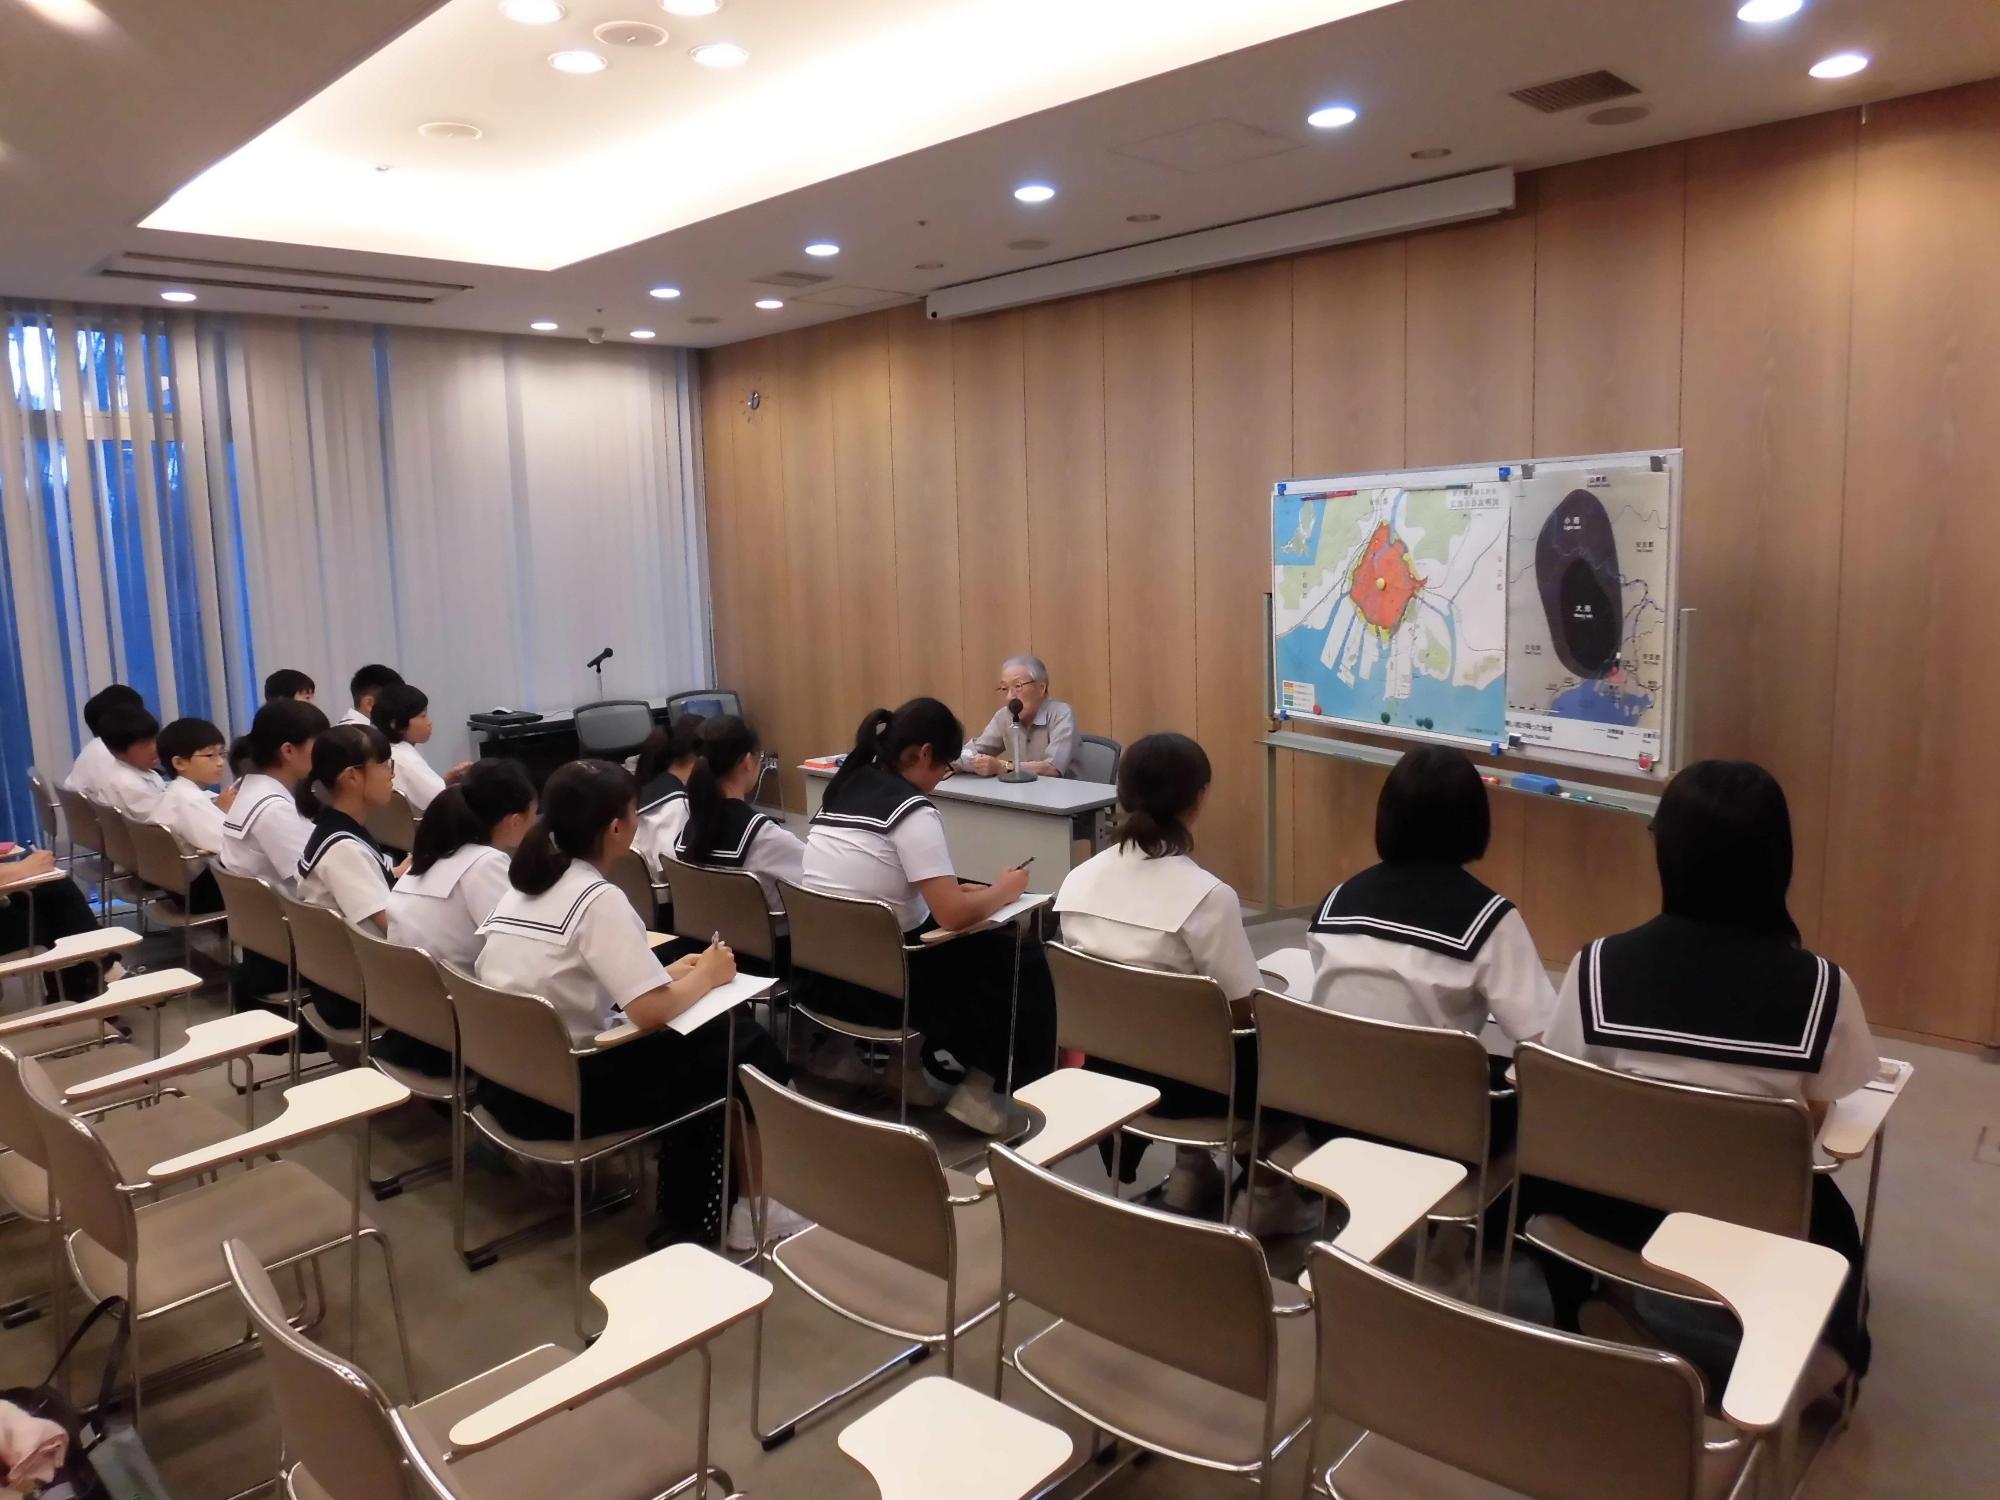 浅野温生（あさのよしお）さんが前の机に座って体験談を話しており、生徒達が椅子に座ってメモを取りながら熱心に話を聞いている様子の写真